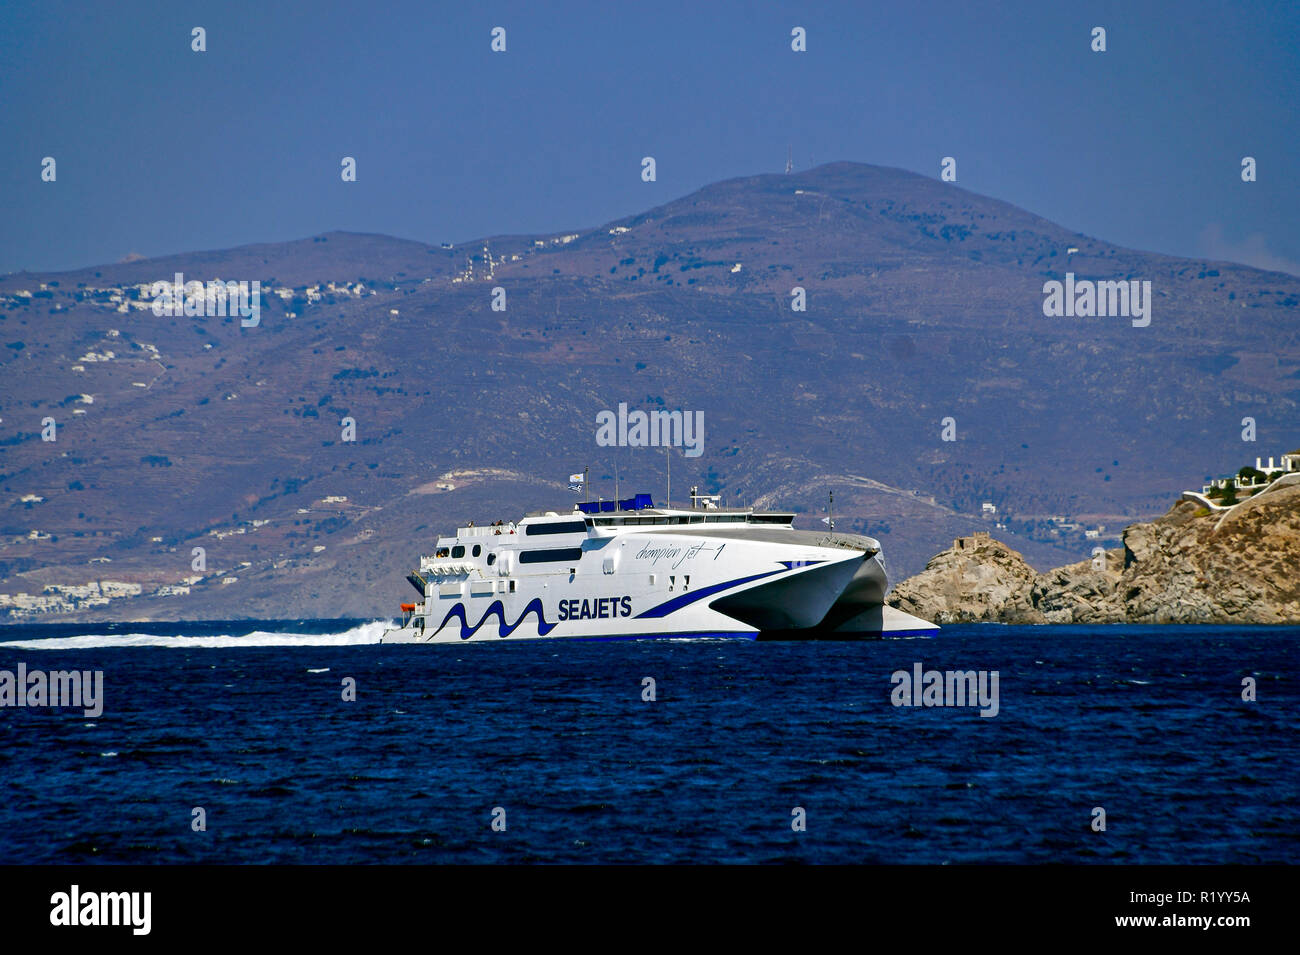 Seajets catemaran Meister Jet 1 in der Nähe von Mykonos Stadt auf der Insel Mykonos in den Kykladen Gruppe in der Ägäis Griechenland Stockfoto